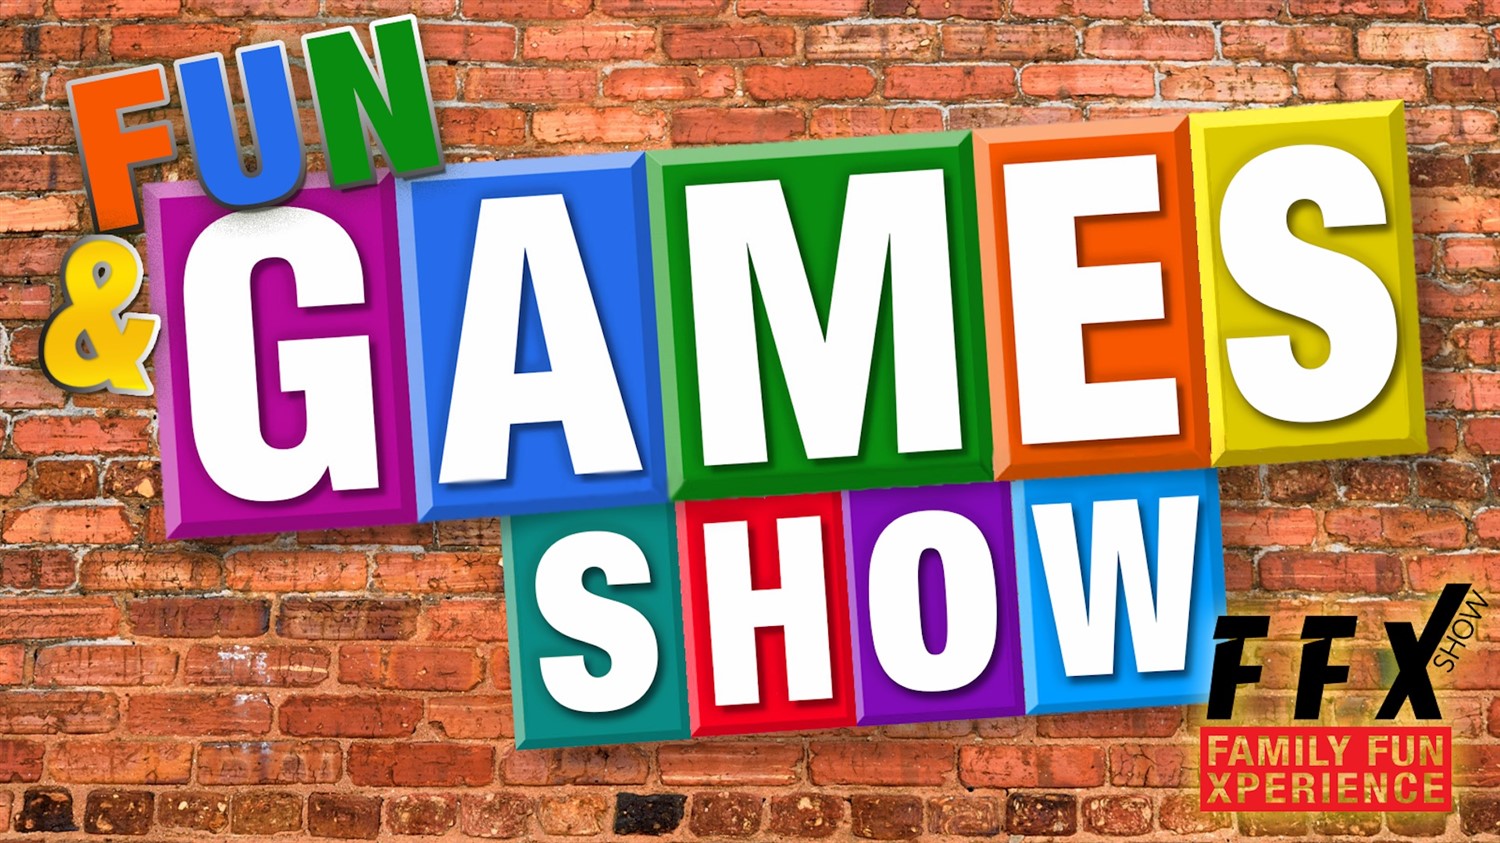 FUN & GAMES SHOW! 5-Star Interactive live audience Xperience! on feb. 11, 19:00@FFX Theatre - Elegir asientoCompra entradas y obtén información enFamily Fun Xperience tickets.ffxshow.org